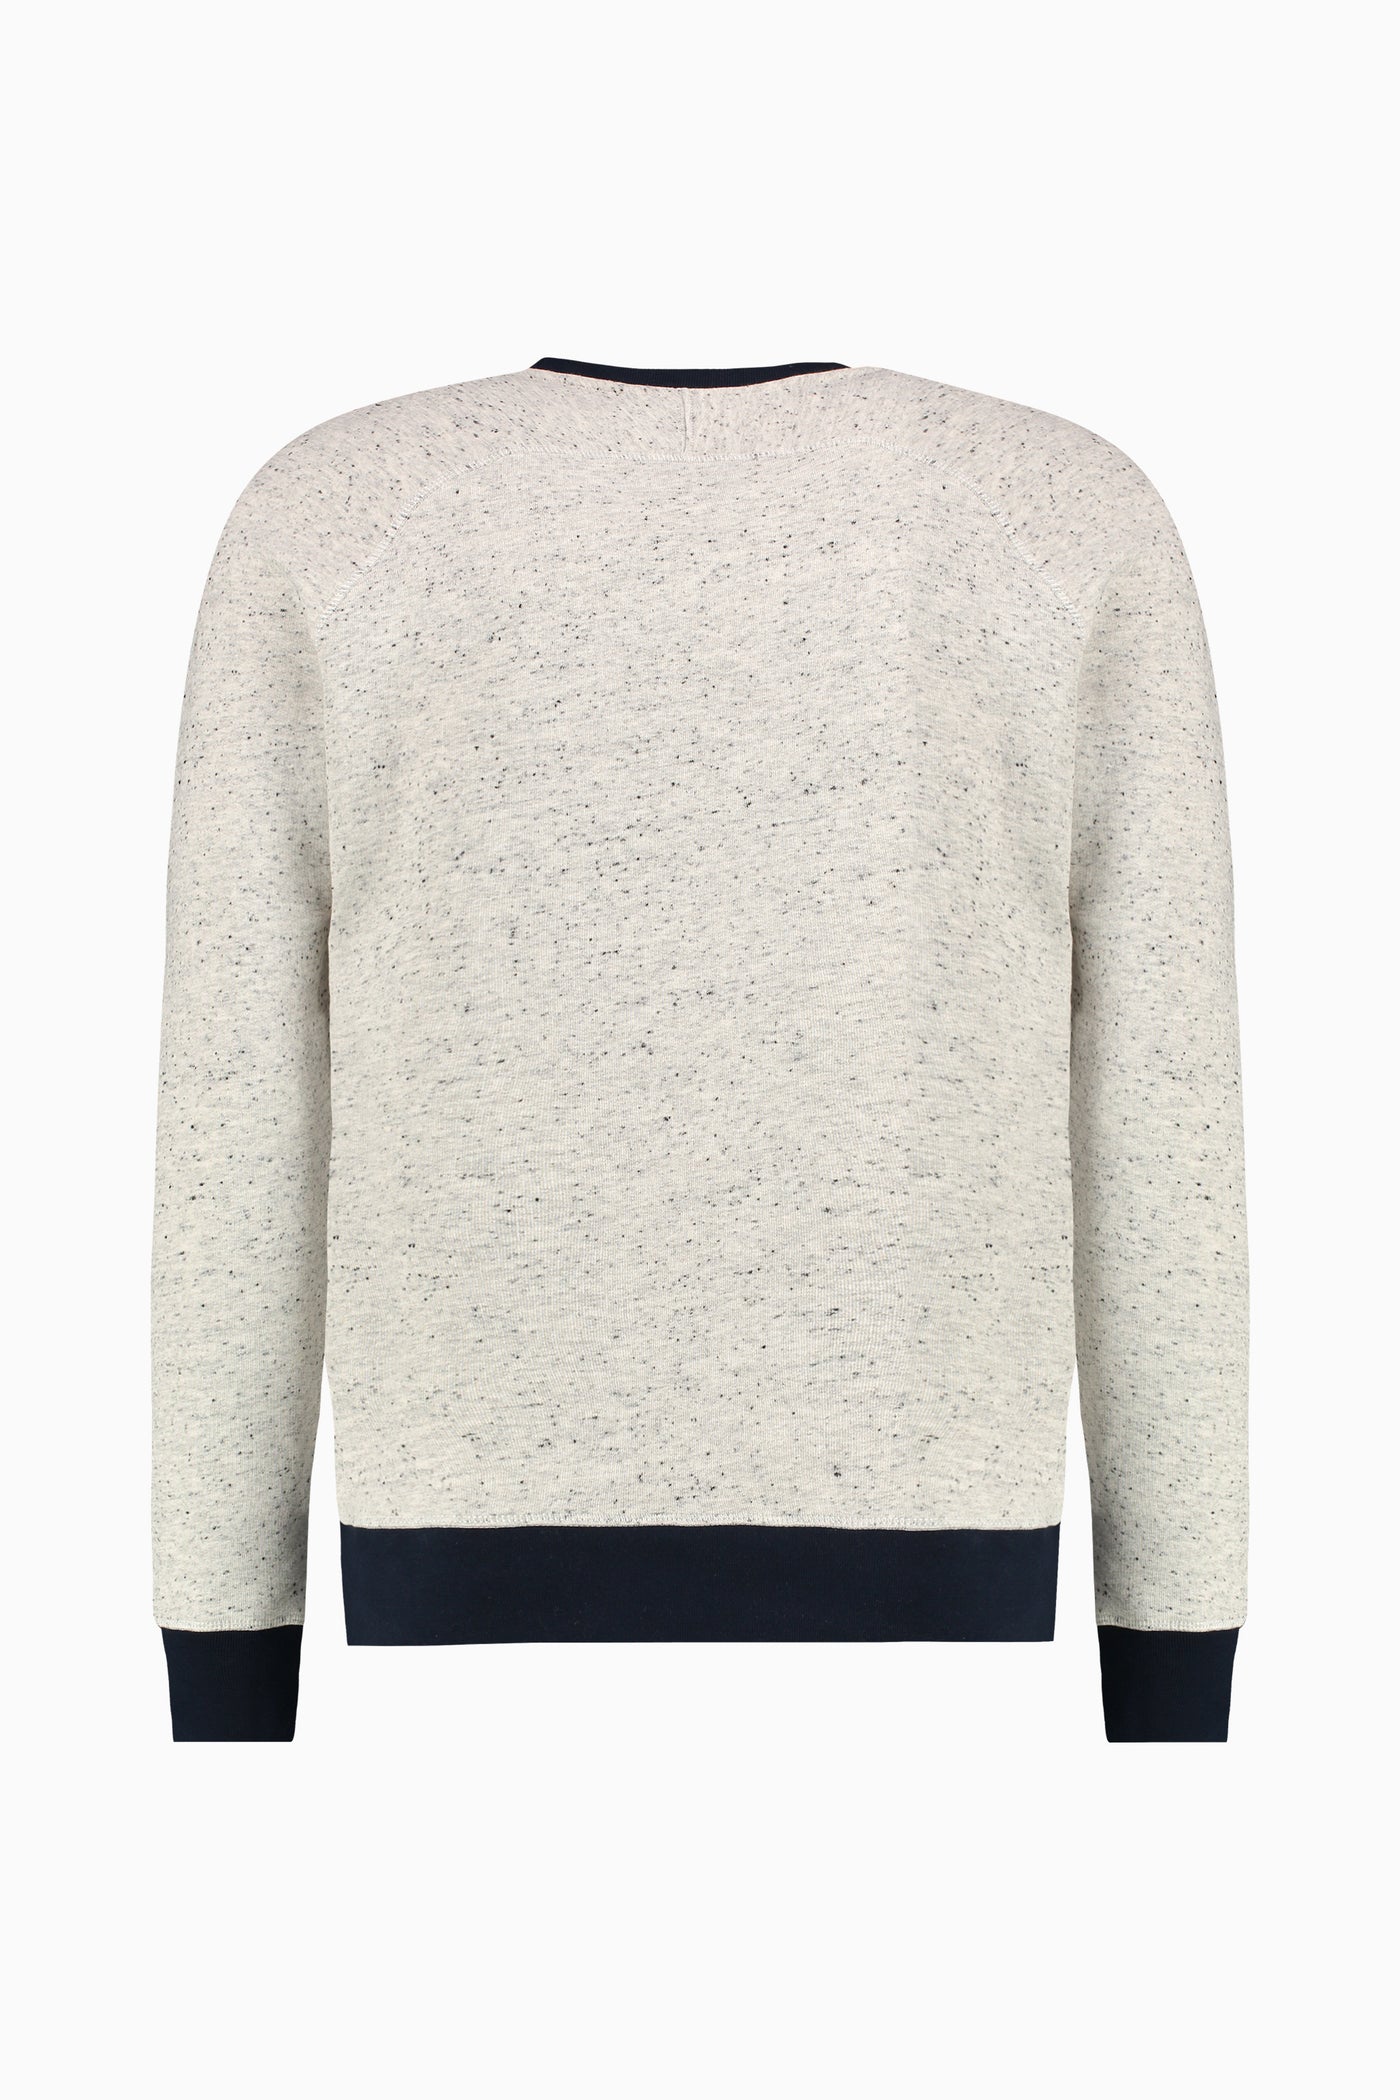 Sweater Chevremont Grey-Navy